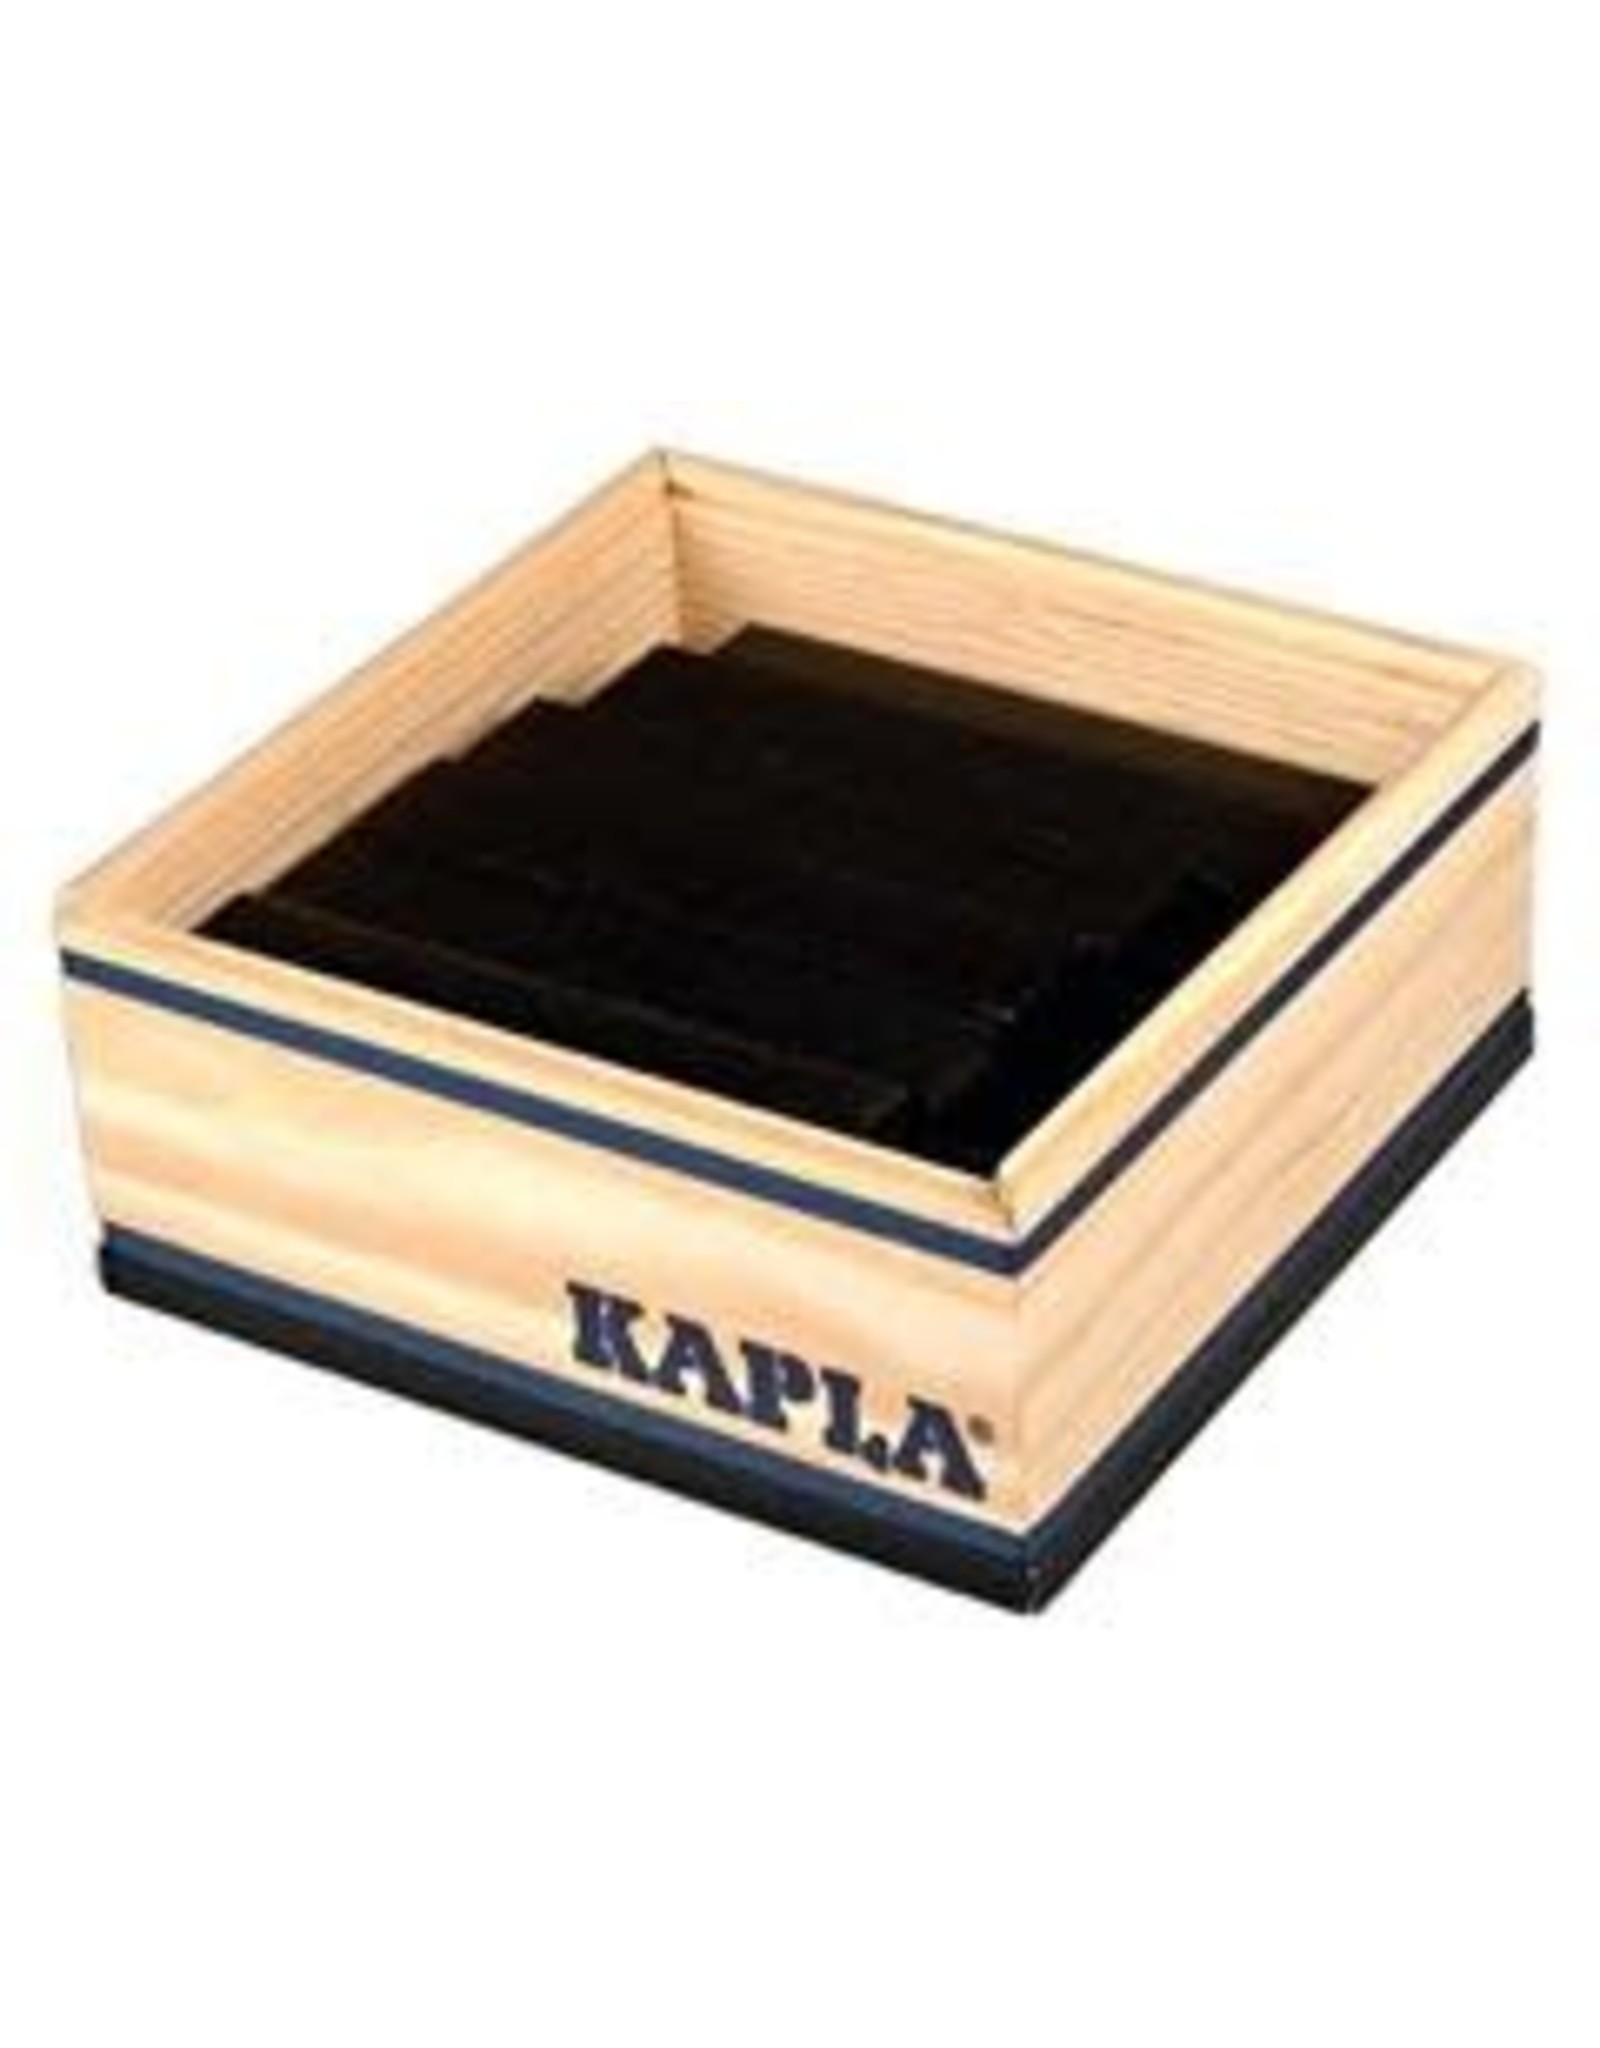 Kapla KAPLA 40 Zwart (in kist­je)